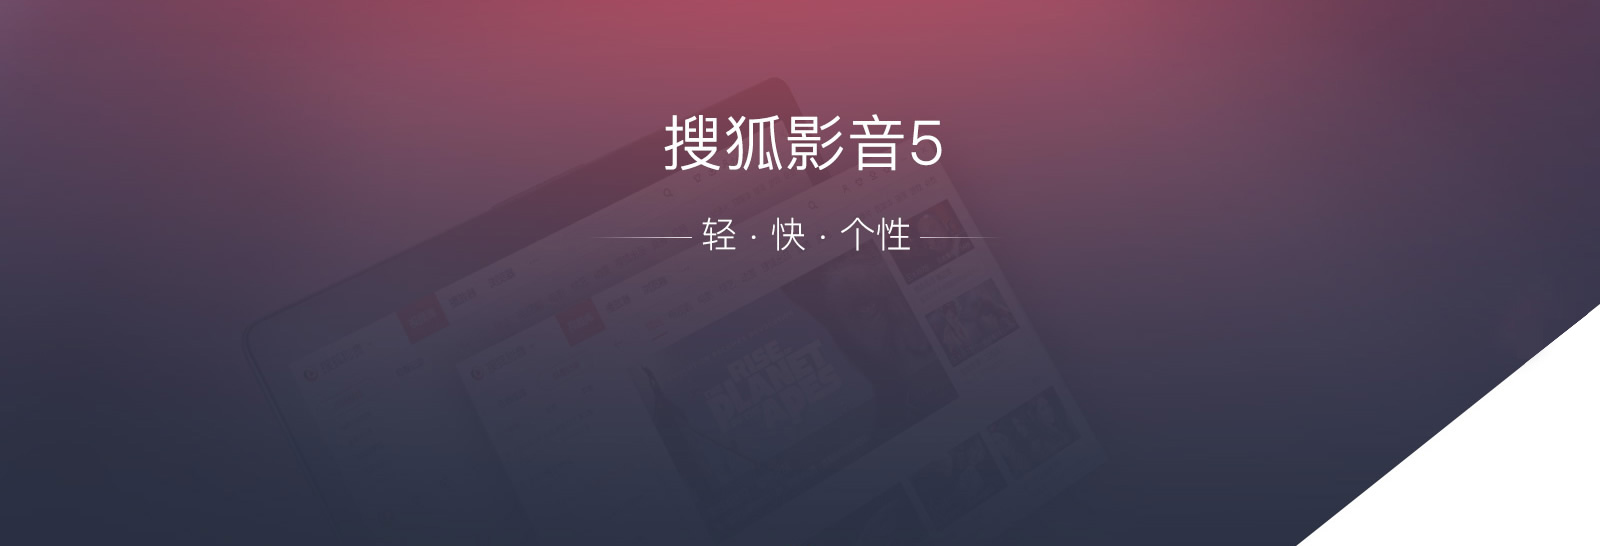 【搜狐影音|搜狐视频移动客户端|搜狐视频手机